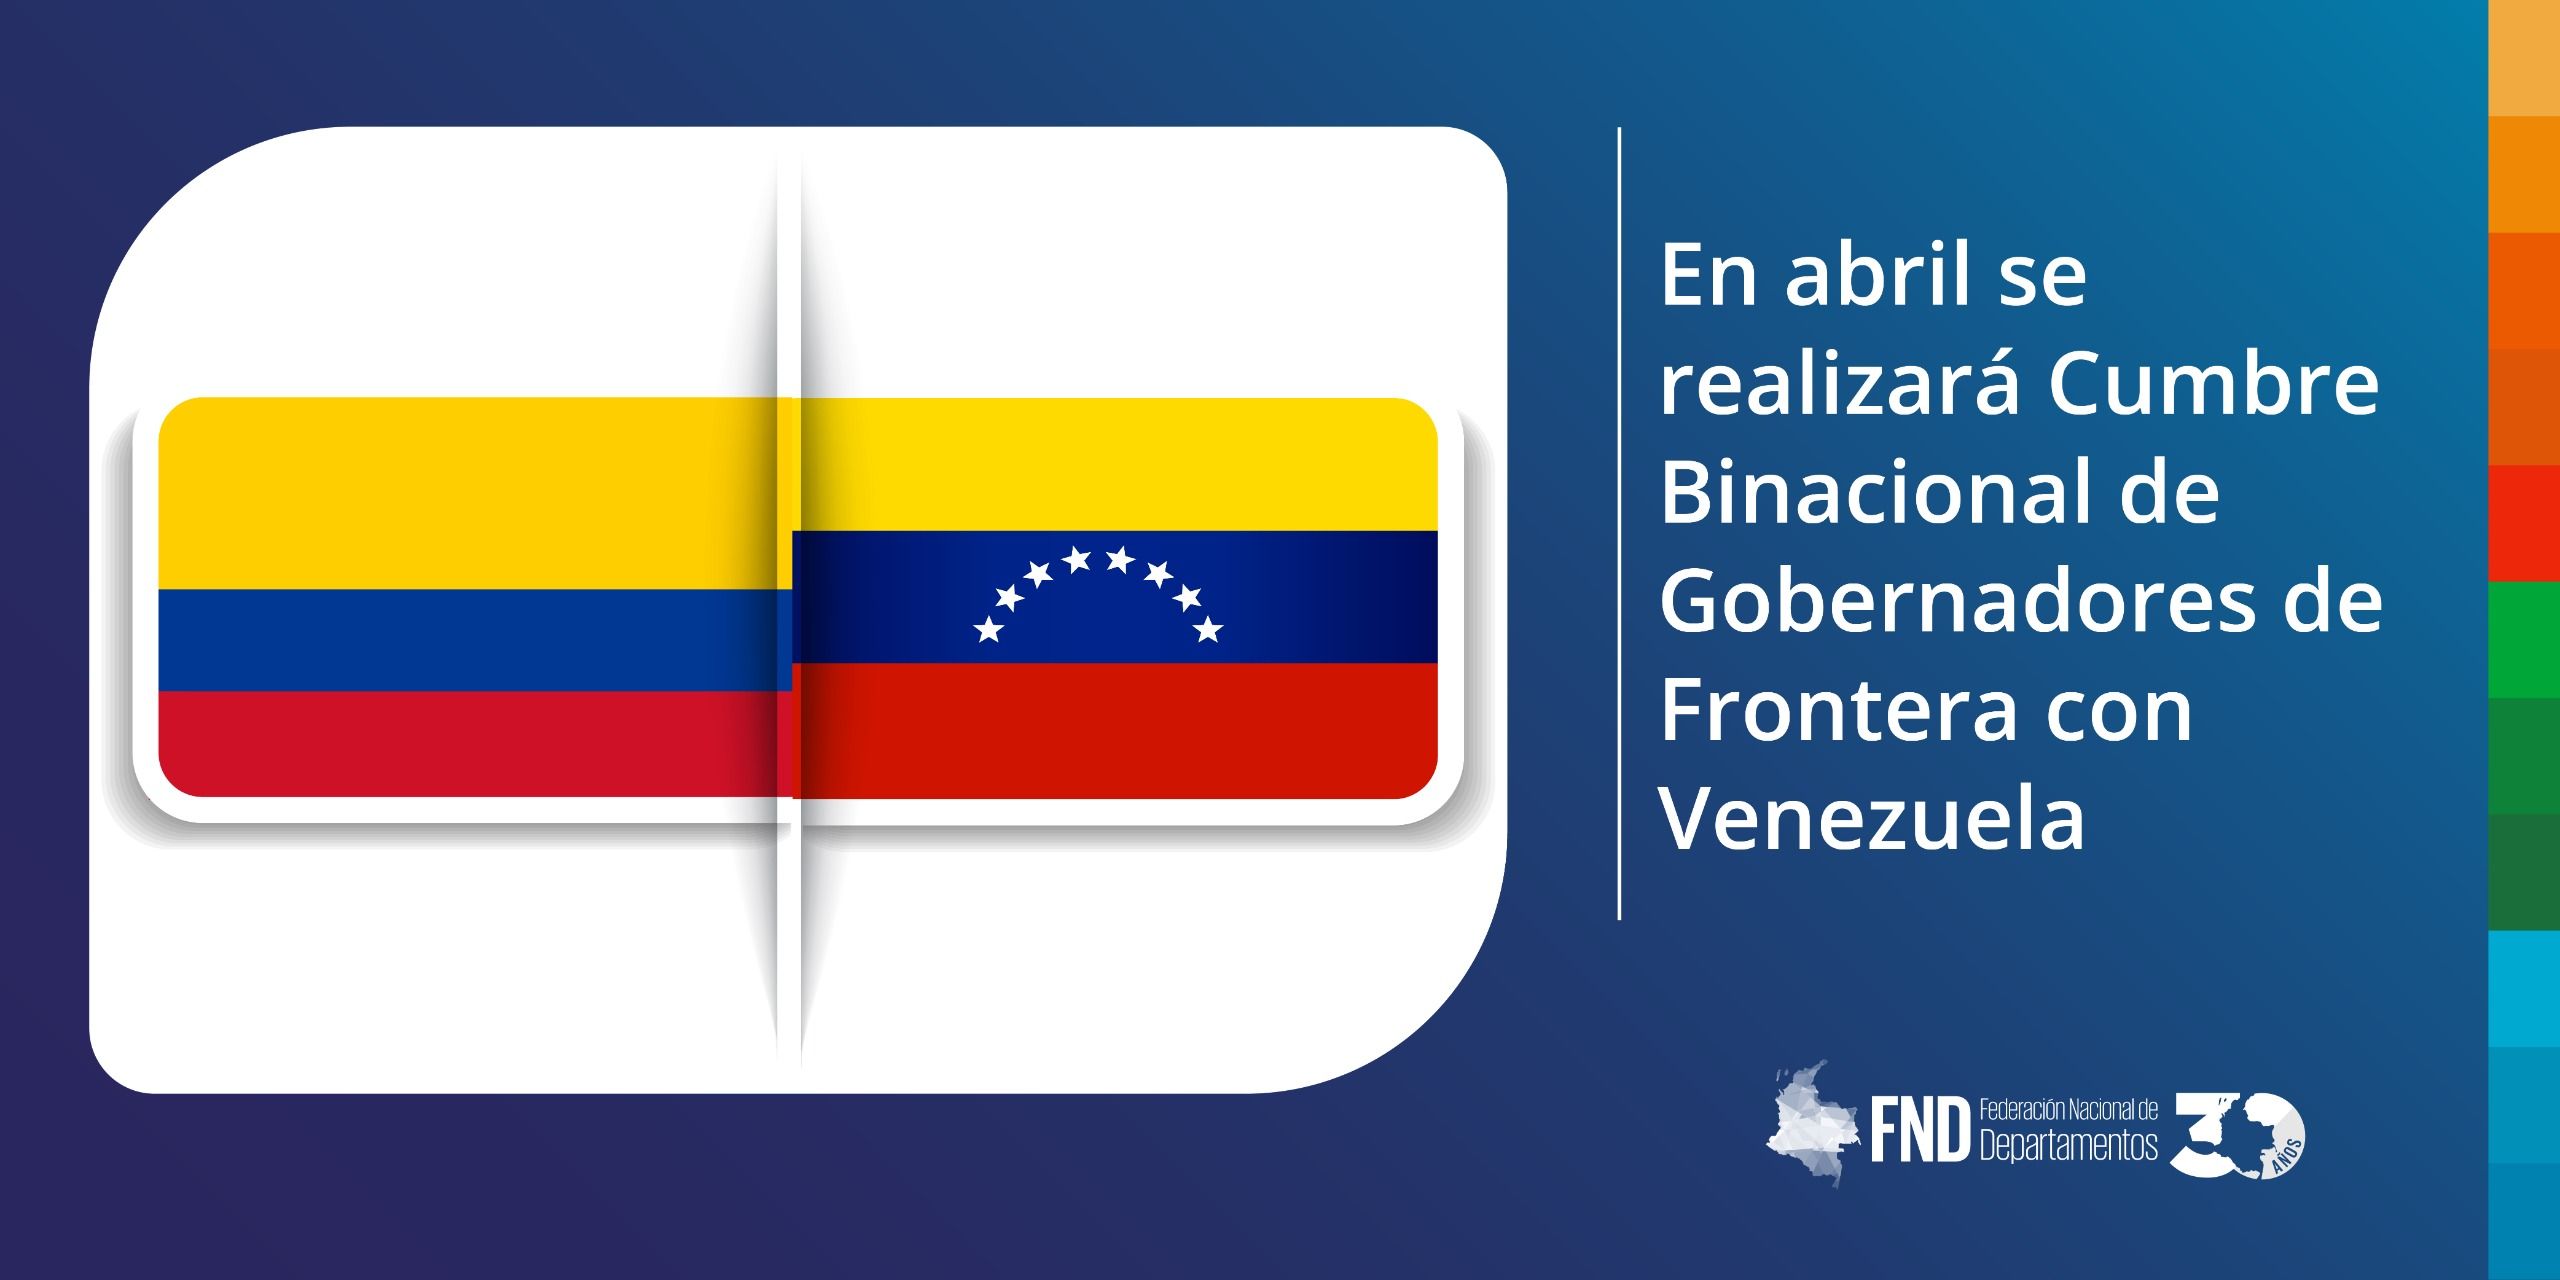 En abril se realizará Cumbre Binacional de Gobernadores de Frontera con Venezuela image